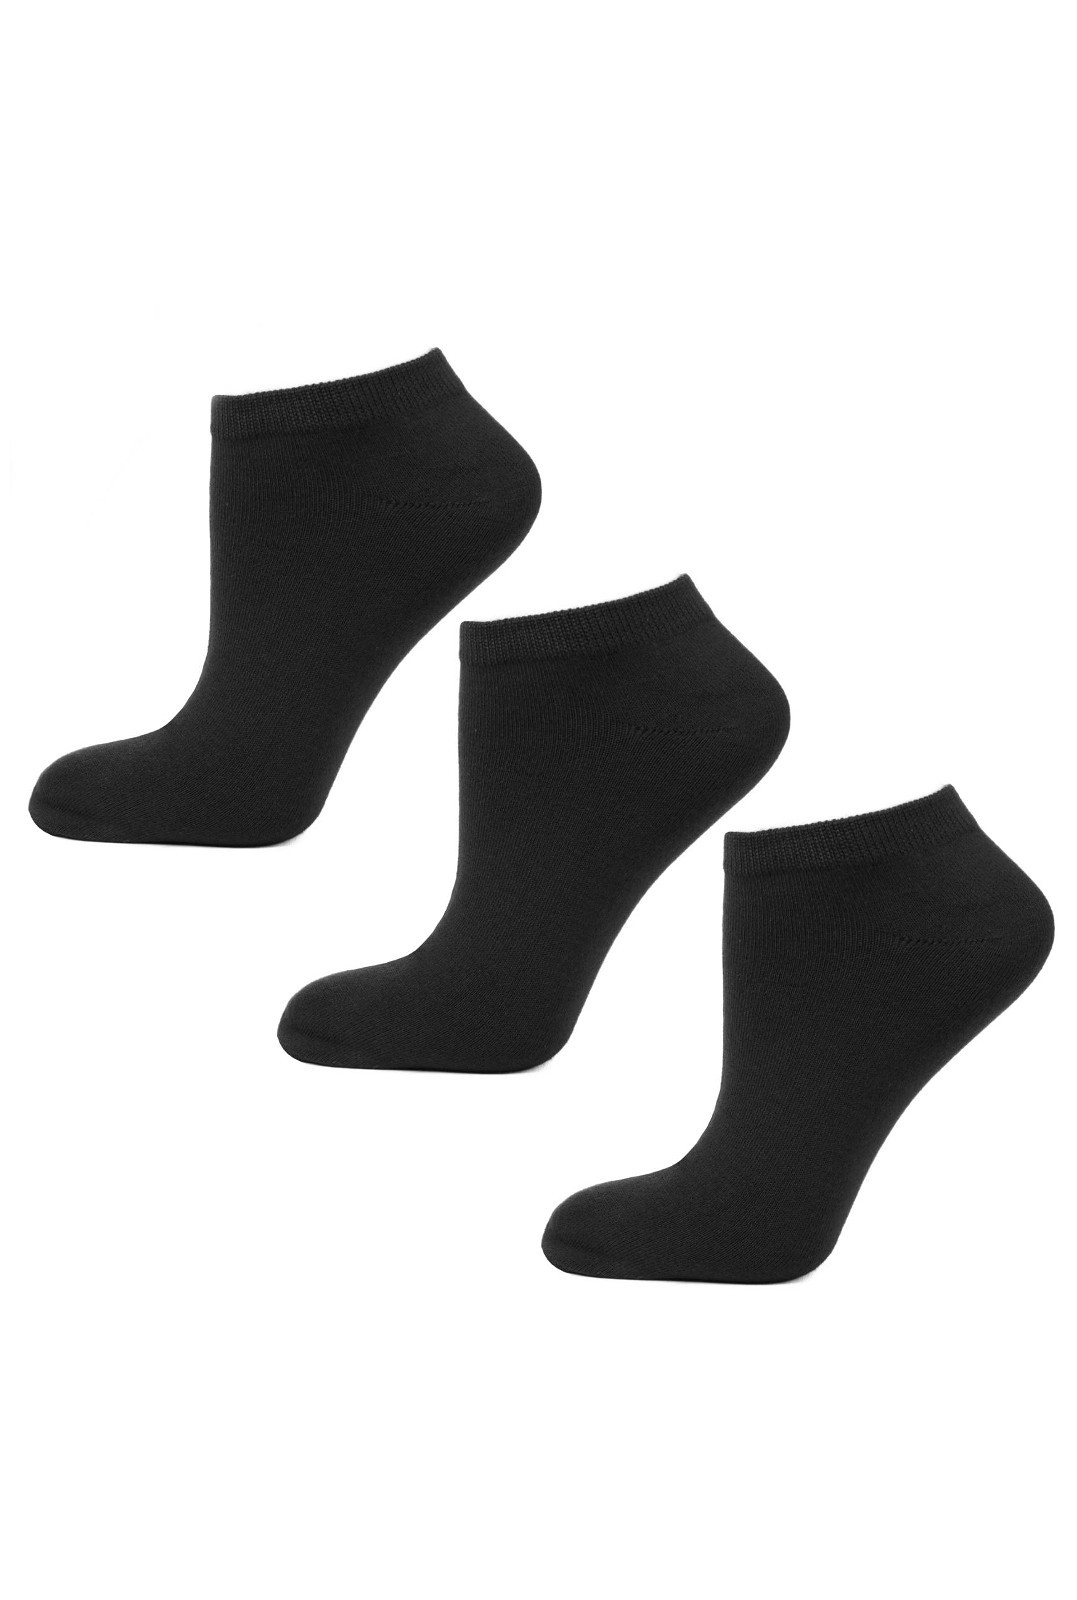 Pánské ponožky Moraj BSK200-03 A'3 43-45 černá 43-45